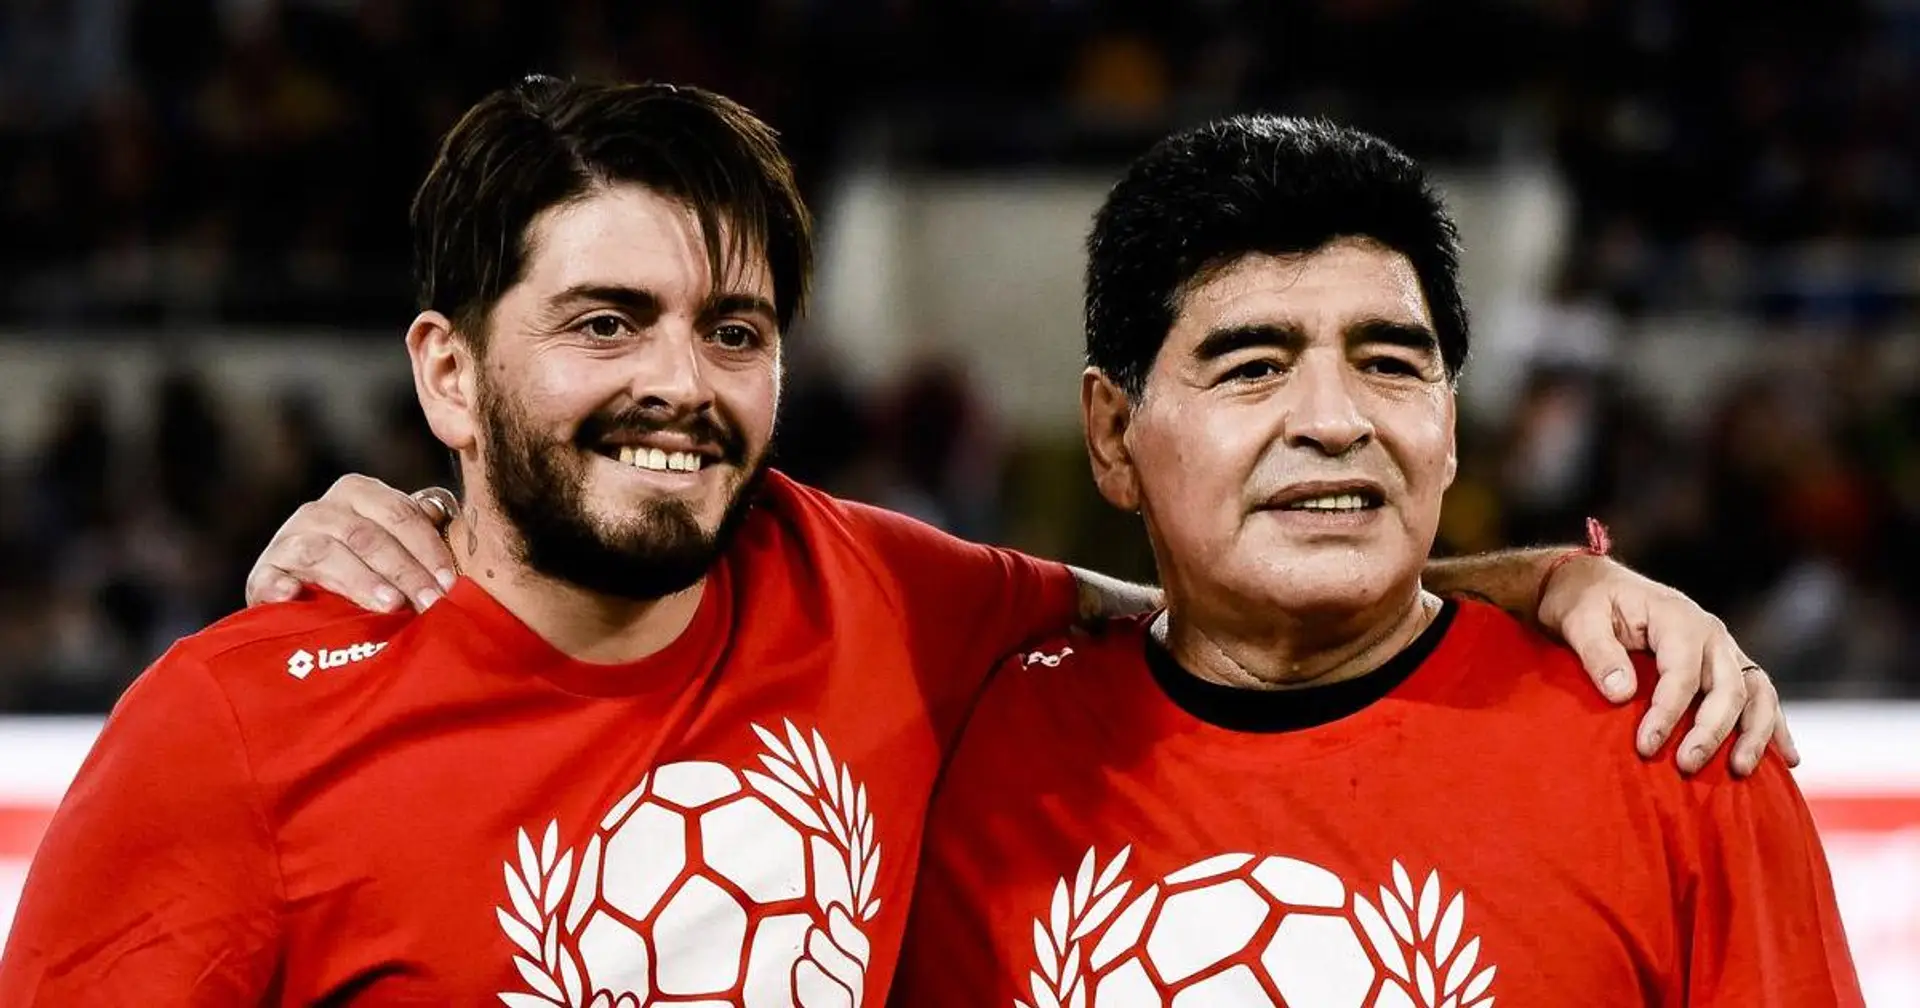 Diego Maradona Jr. estime que le n°10 devrait être retiré dans toutes les anciennes équipes de son père, y compris Barcelone